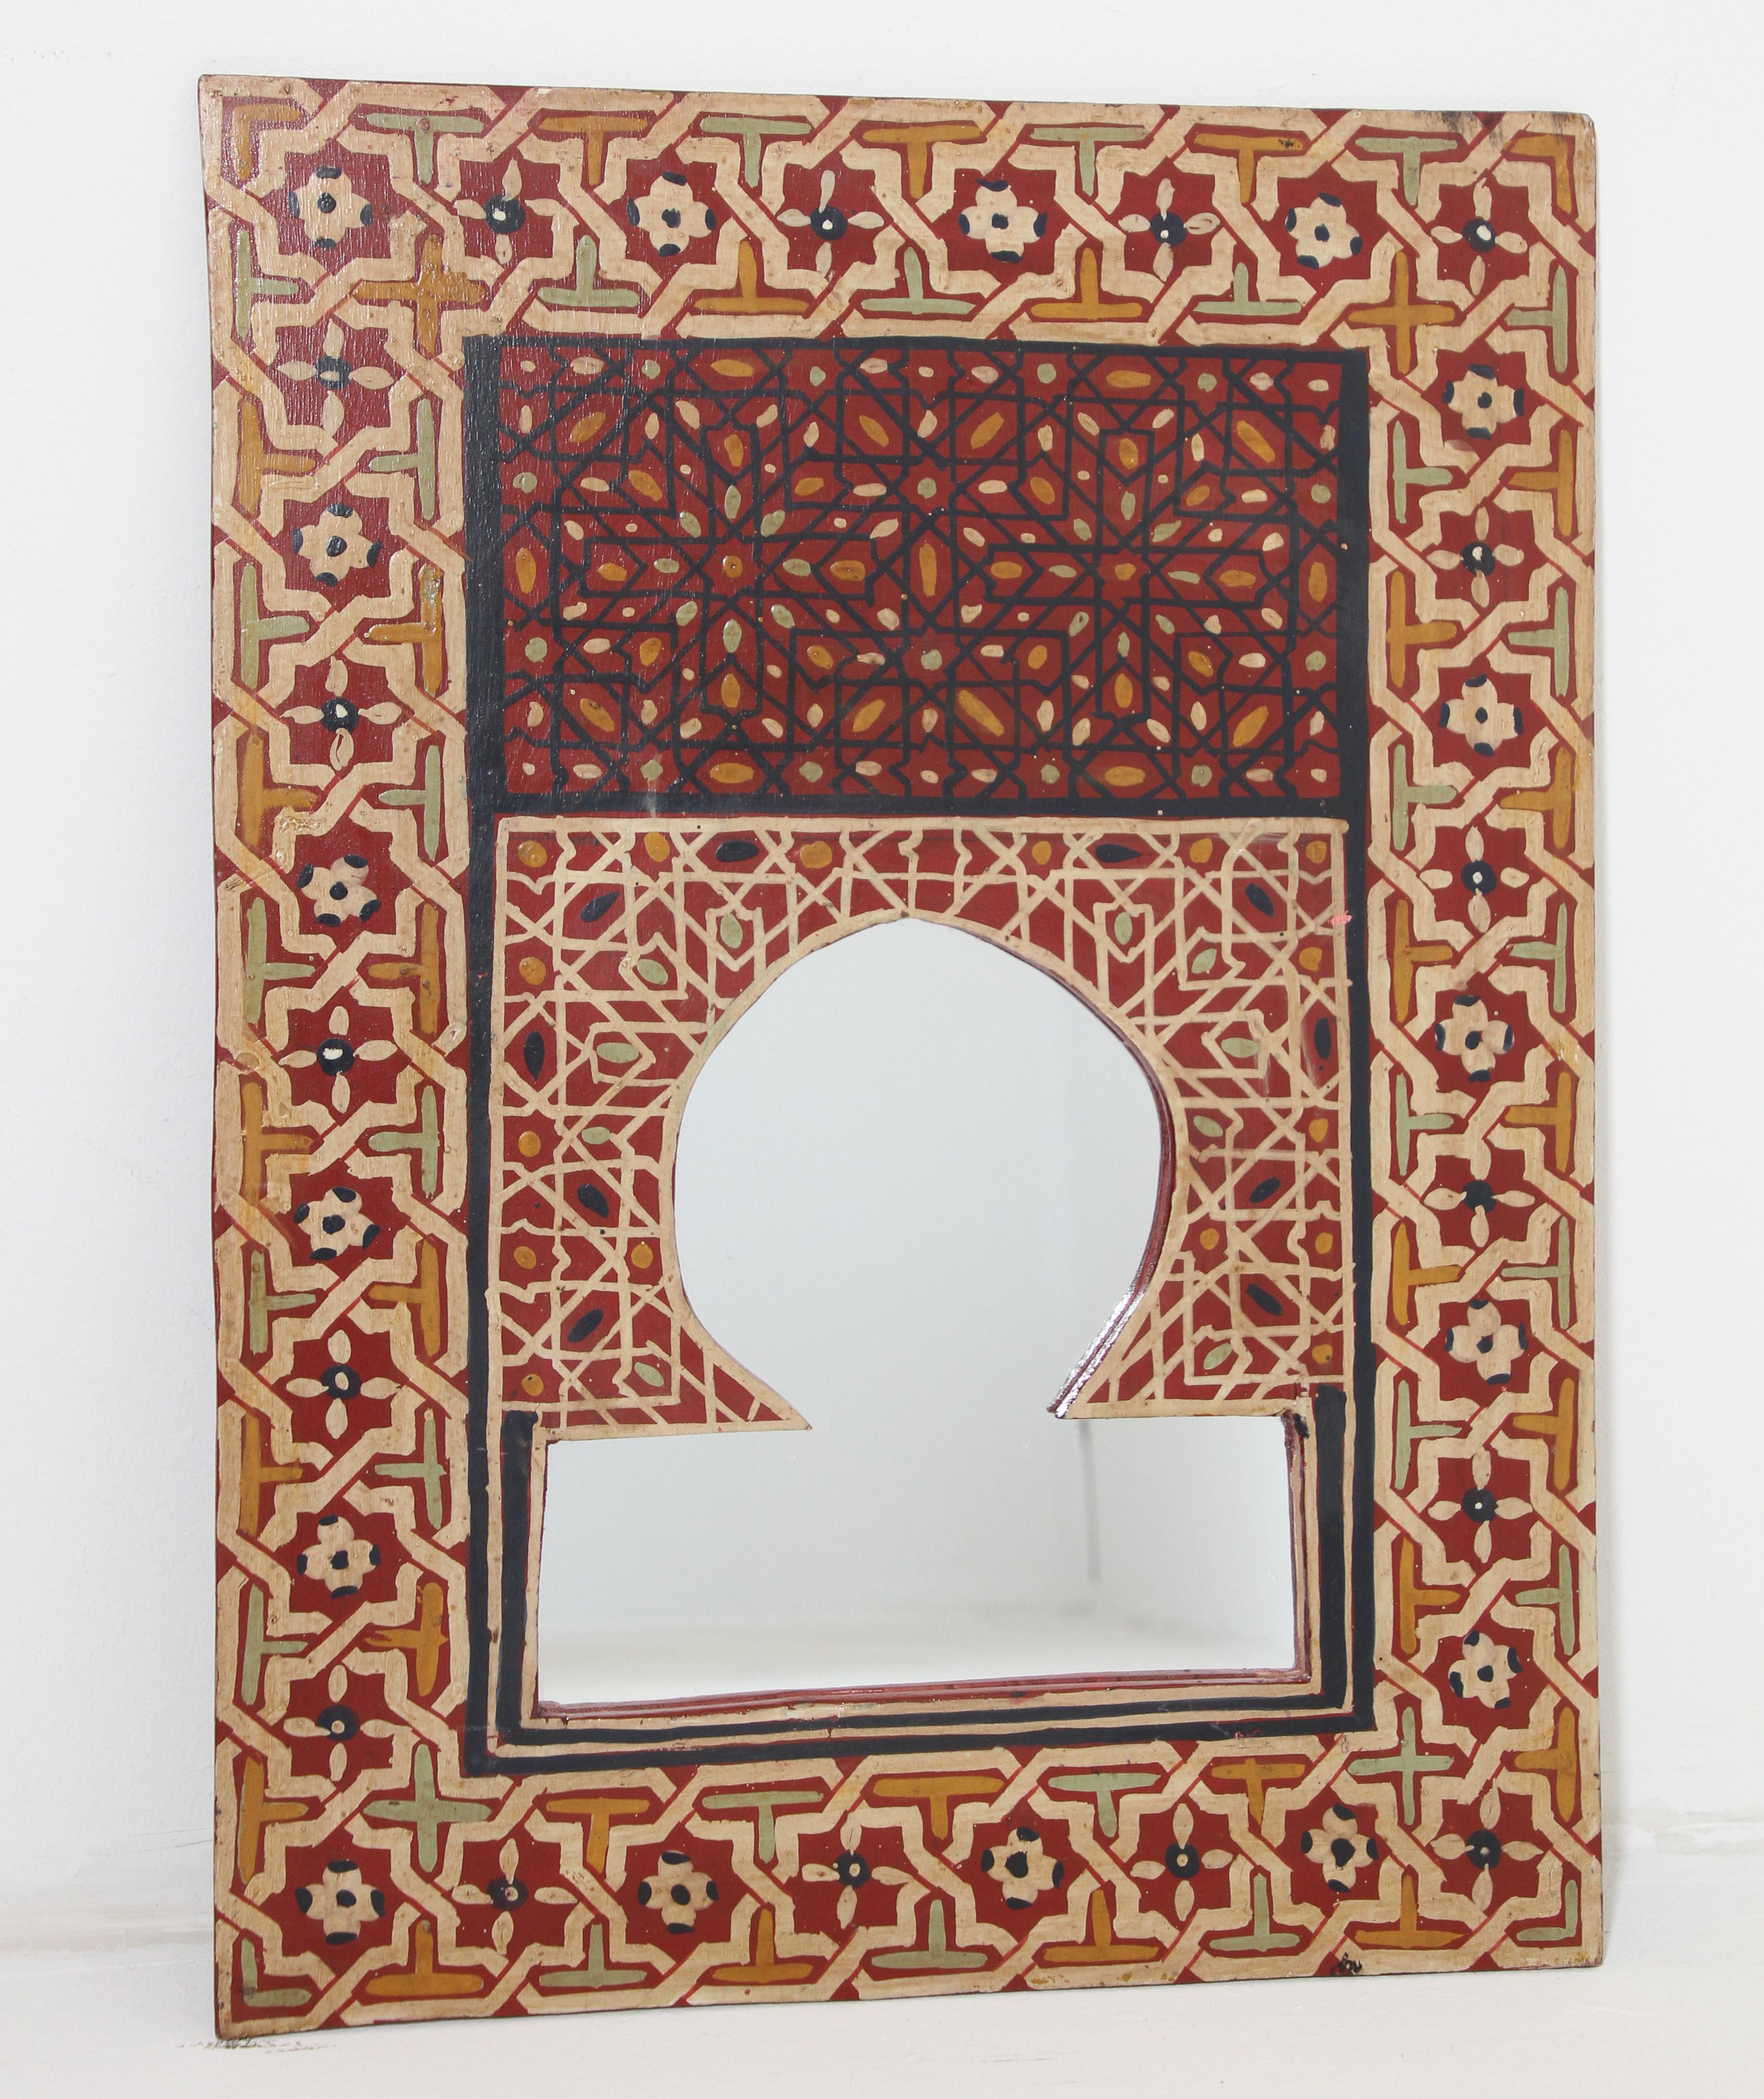 Vieux miroir marocain, peint à la main, miroir en bois en forme de fenêtre mauresque.
Magnifique miroir fabriqué à la main dans un design traditionnel mauresque peint à la main avec des arabesques et des motifs géométriques élaborés.
Ce miroir